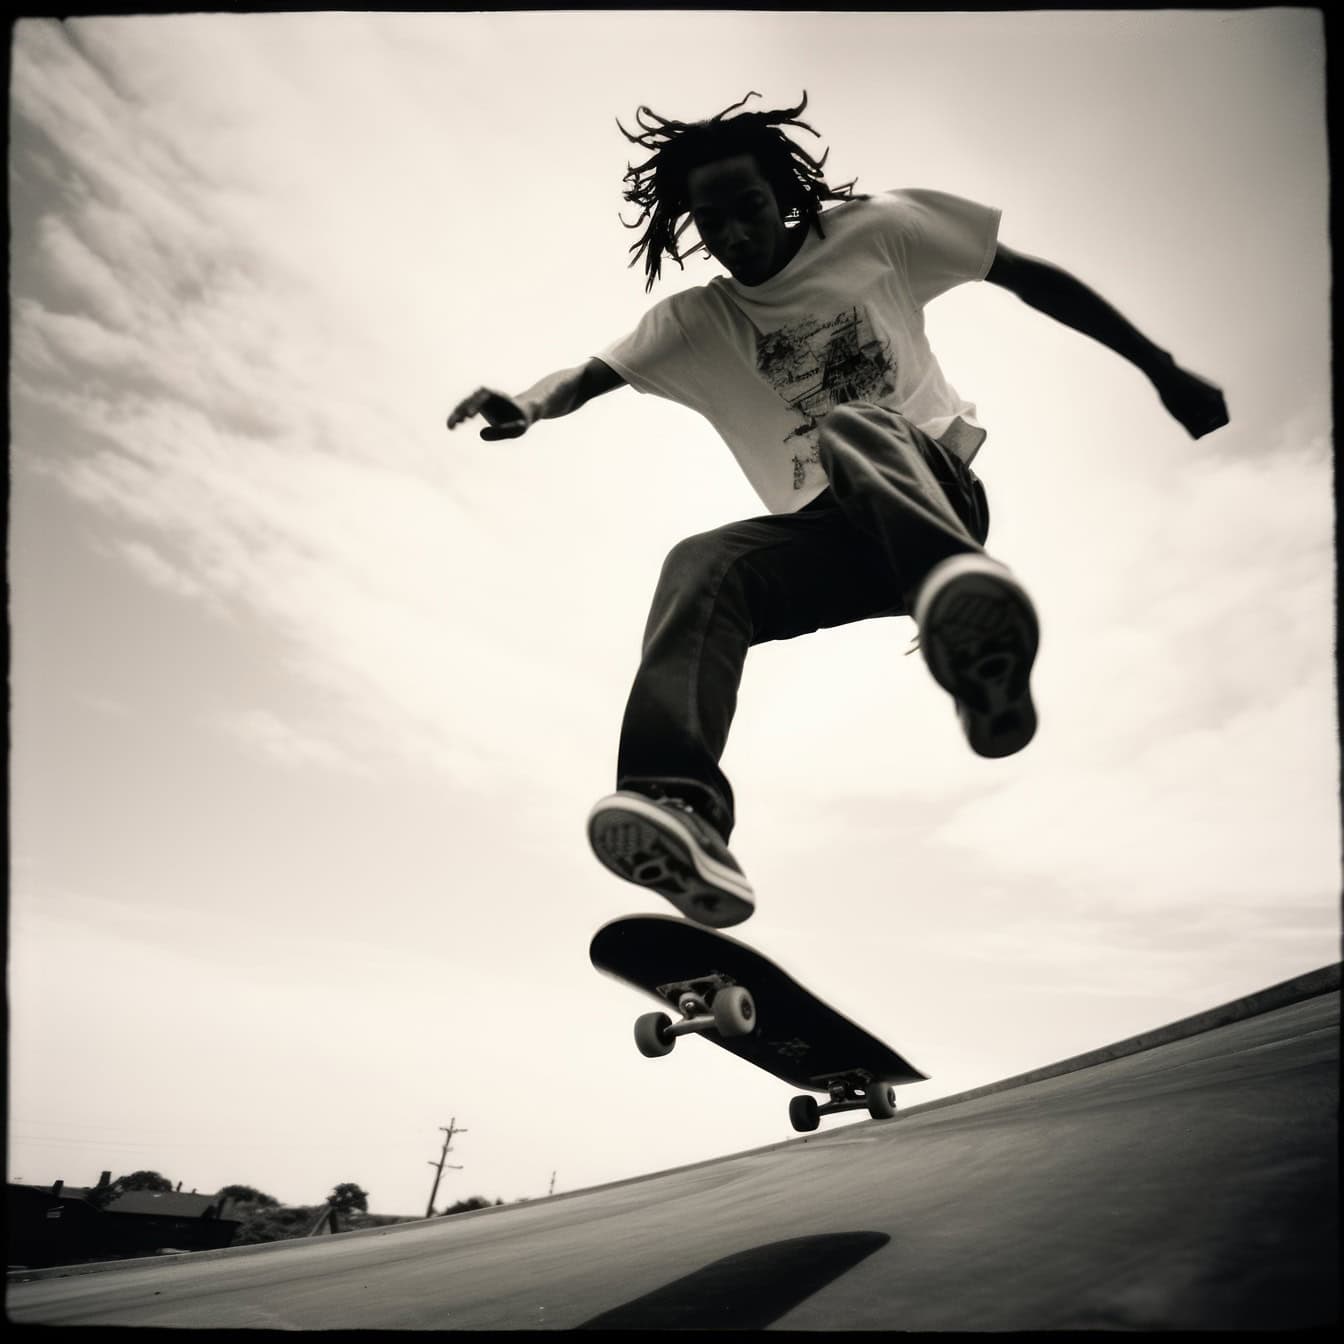 Ein altes Schwarz-Weiß-Polaroid-Foto der Silhouette eines afroamerikanischen Mannes, der wie ein Stuntman auf einem Skateboard in die Luft springt